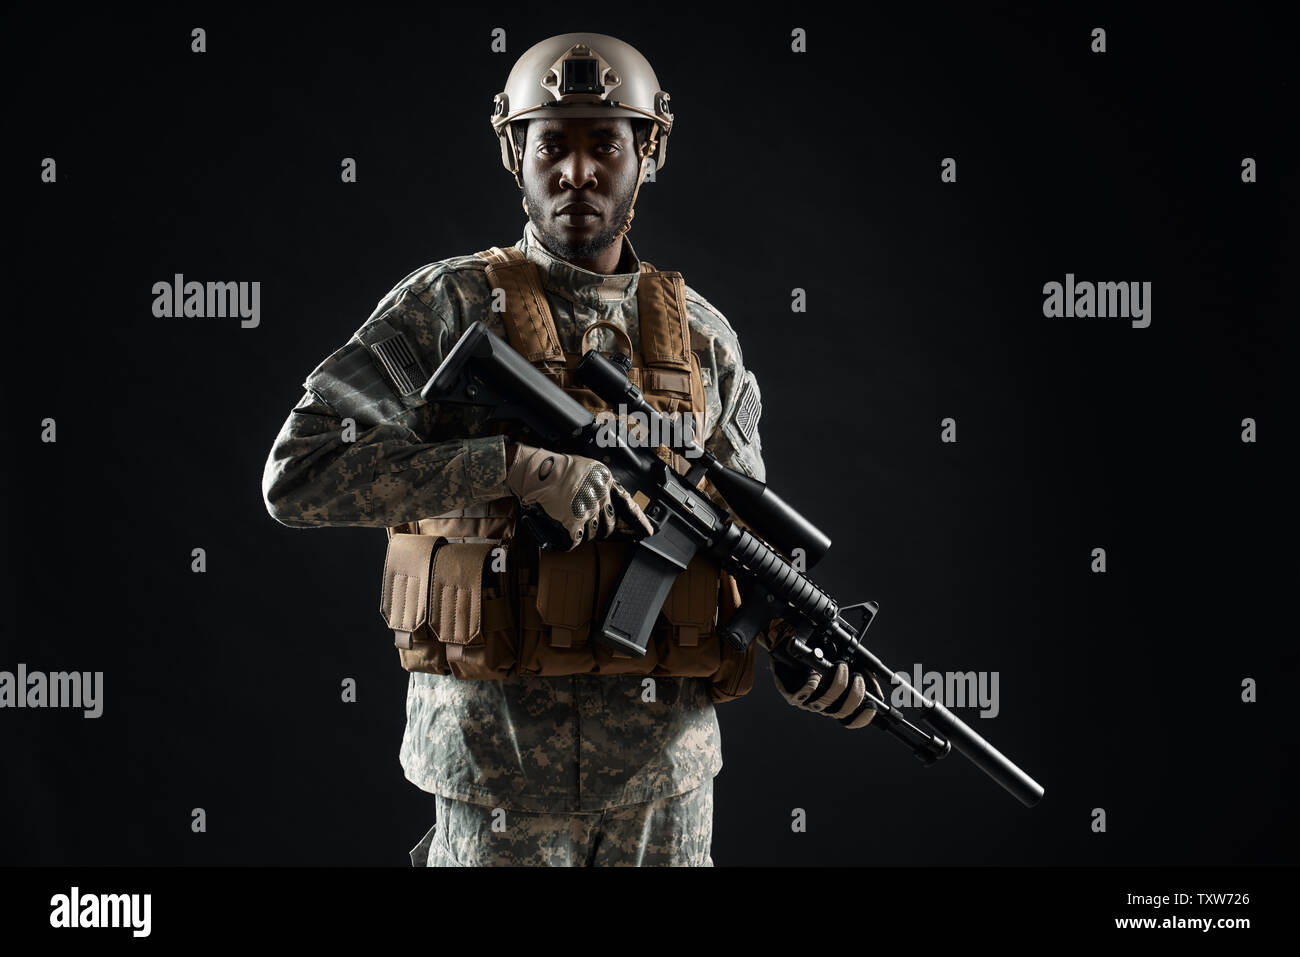 Vorderansicht der afrikanische Mann Soldat trägt Uniform Holding mit der Waffe in der Hand und überzeugt davon, Kamera schaut. Kutschen mann Vorbereitung für den Krieg. Konzept der Armee. Schwarzen Hintergrund. Stockfoto